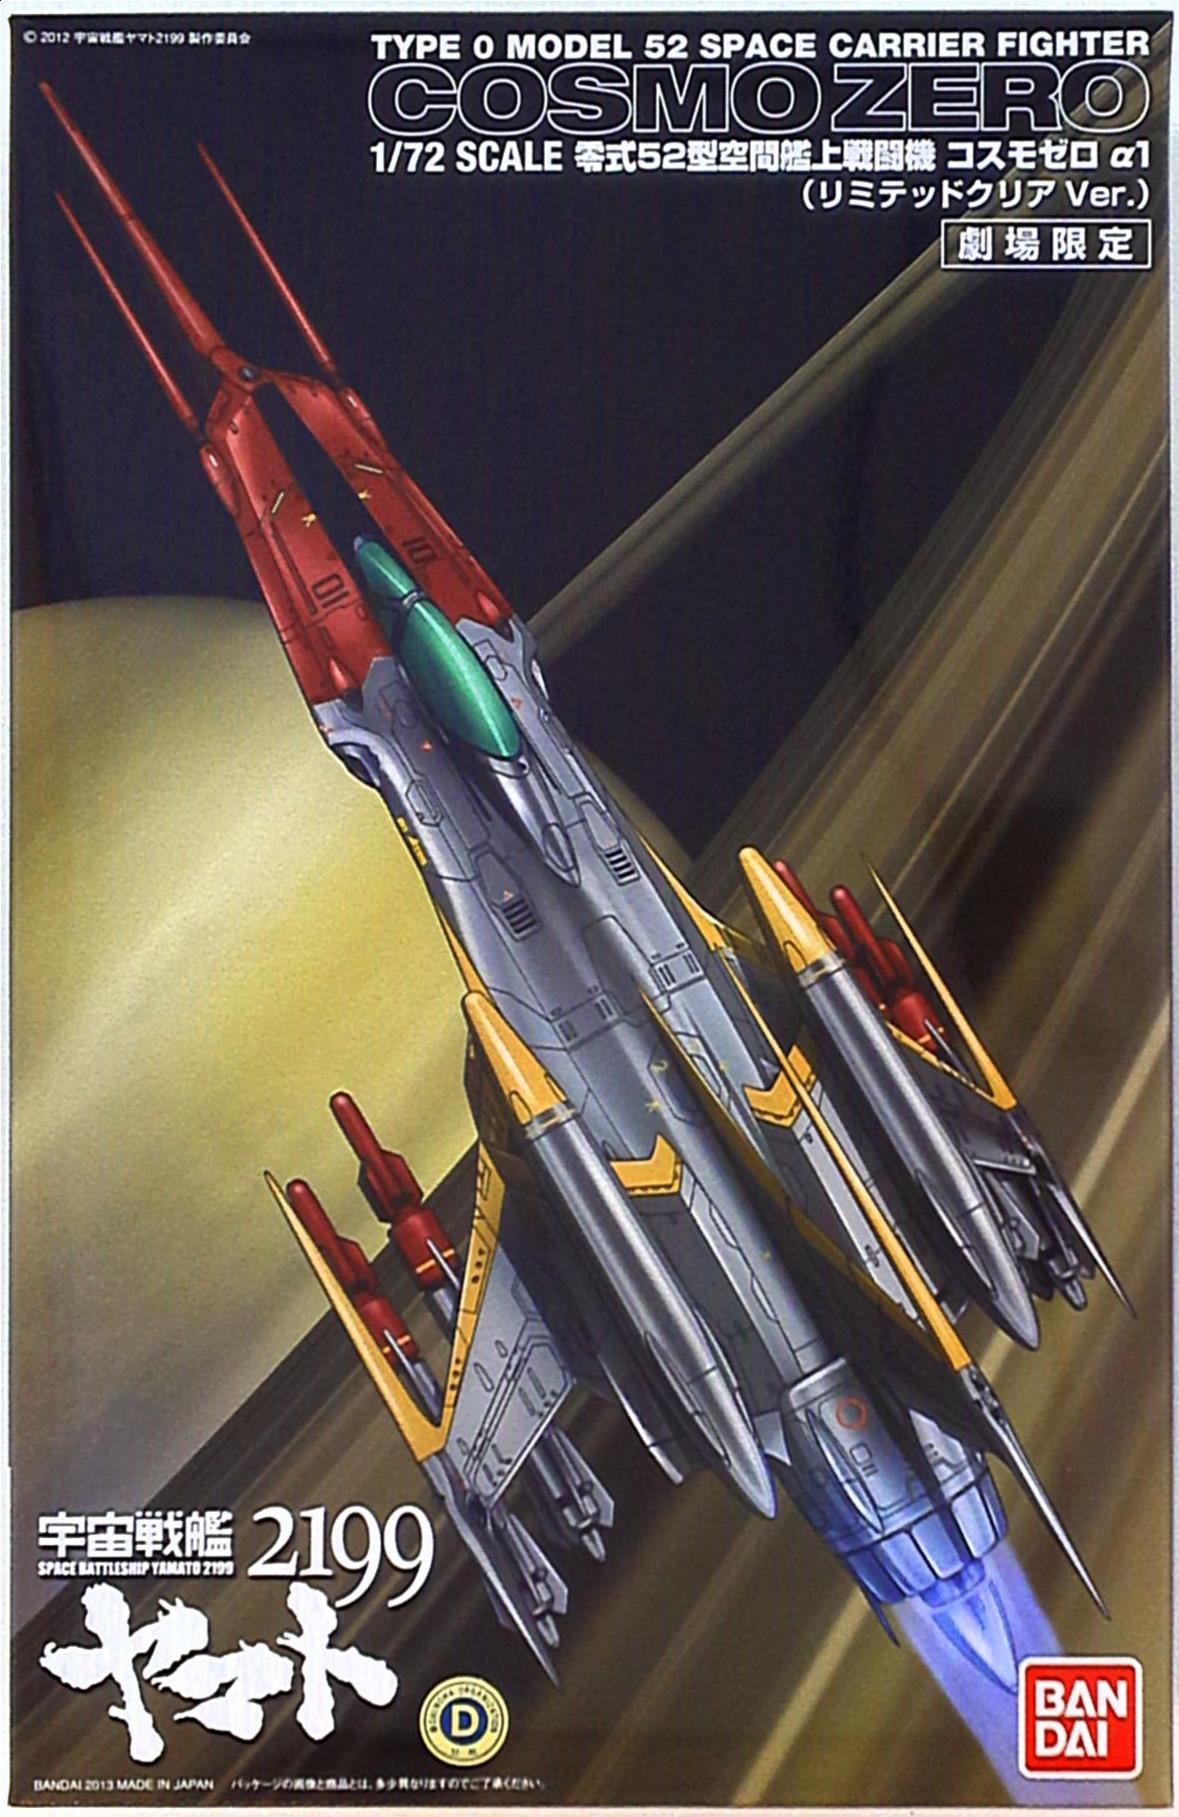 バンダイ 宇宙戦艦ヤマト2199 1/72スケール零式52型空間艦上戦闘機